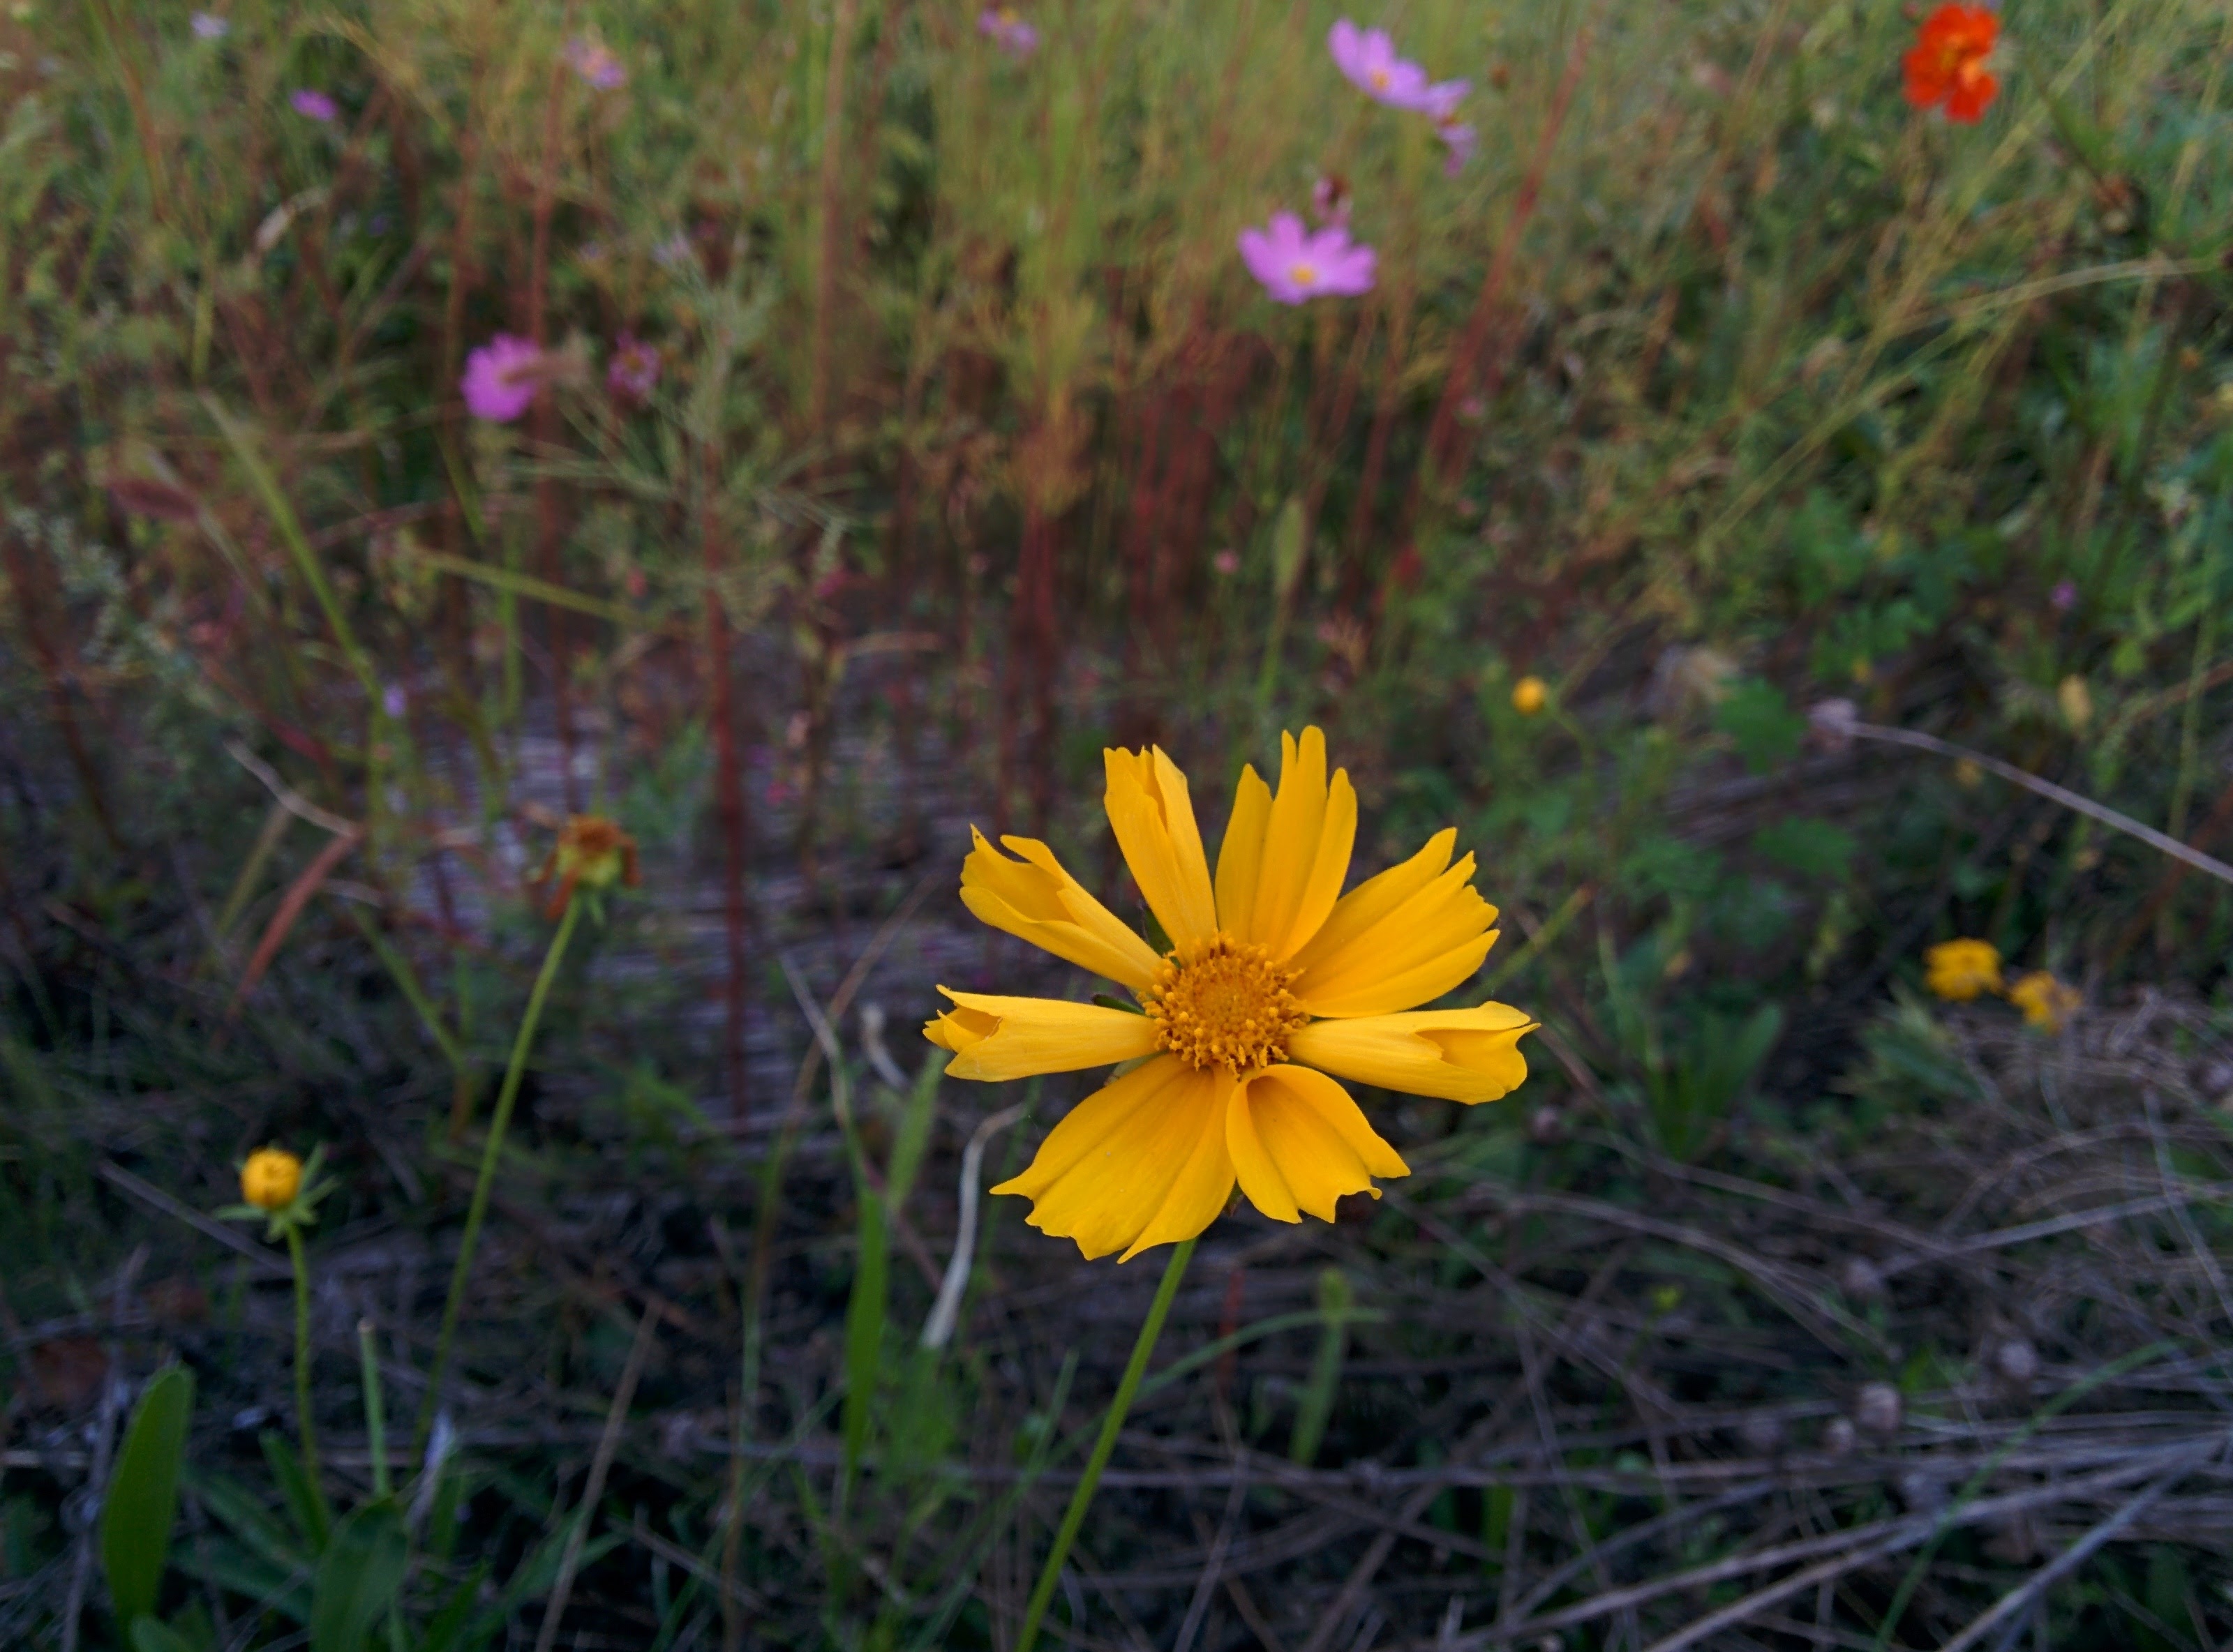 IMG_20150919_181202.jpg 코스모스속에서 외로운 큰금계국 황금색 꽃